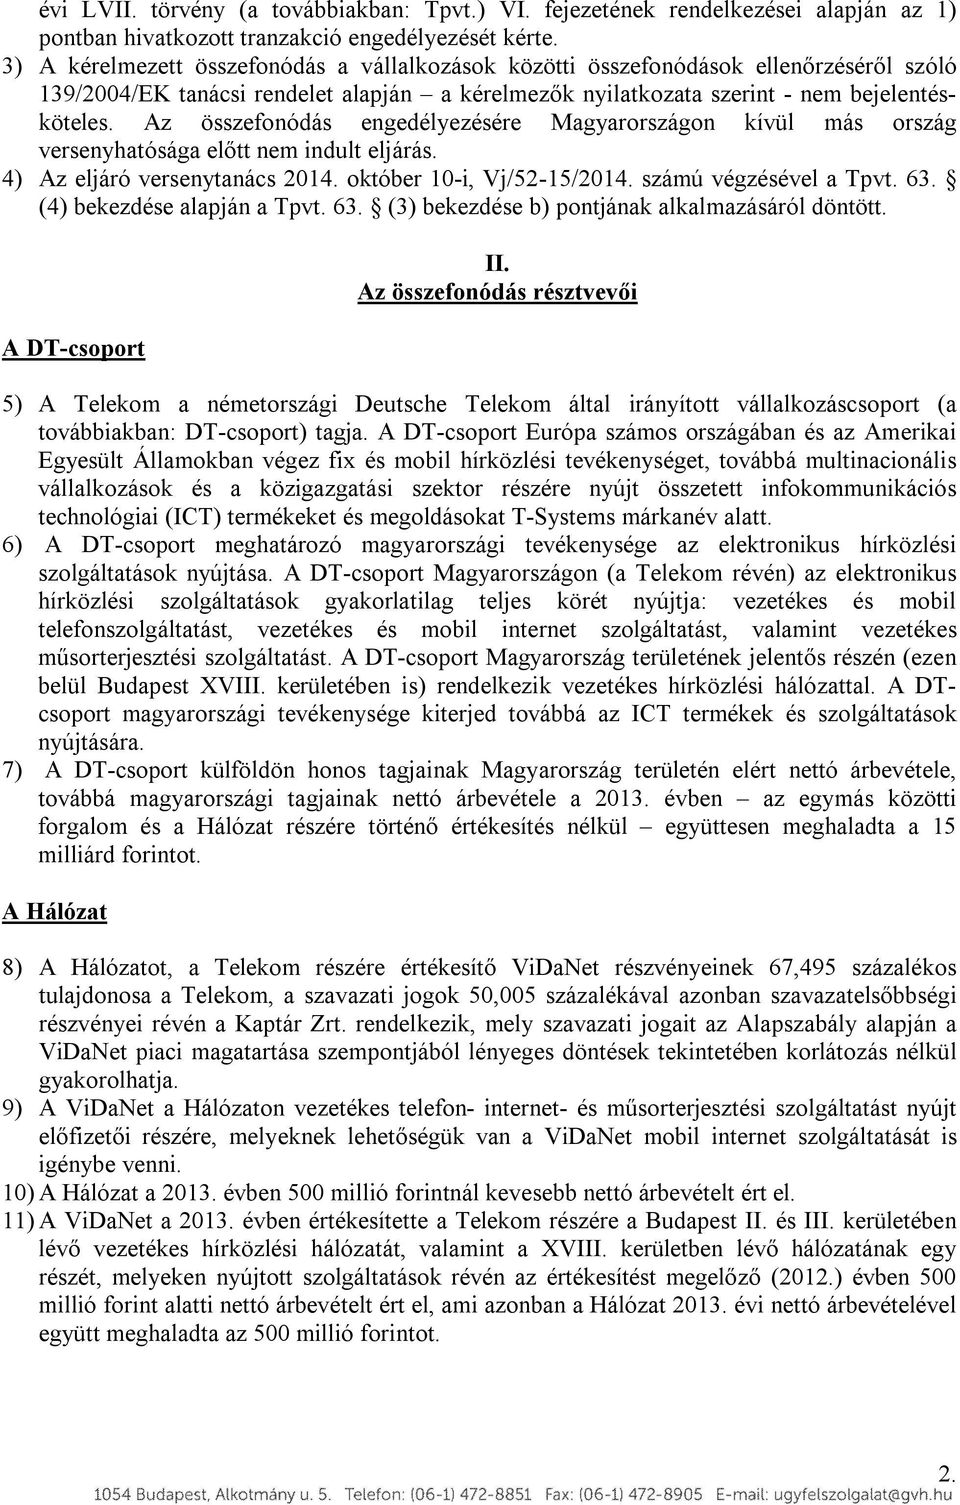 Az összefonódás engedélyezésére Magyarországon kívül más ország versenyhatósága előtt nem indult eljárás. 4) Az eljáró versenytanács 2014. október 10-i, Vj/52-15/2014. számú végzésével a Tpvt. 63.